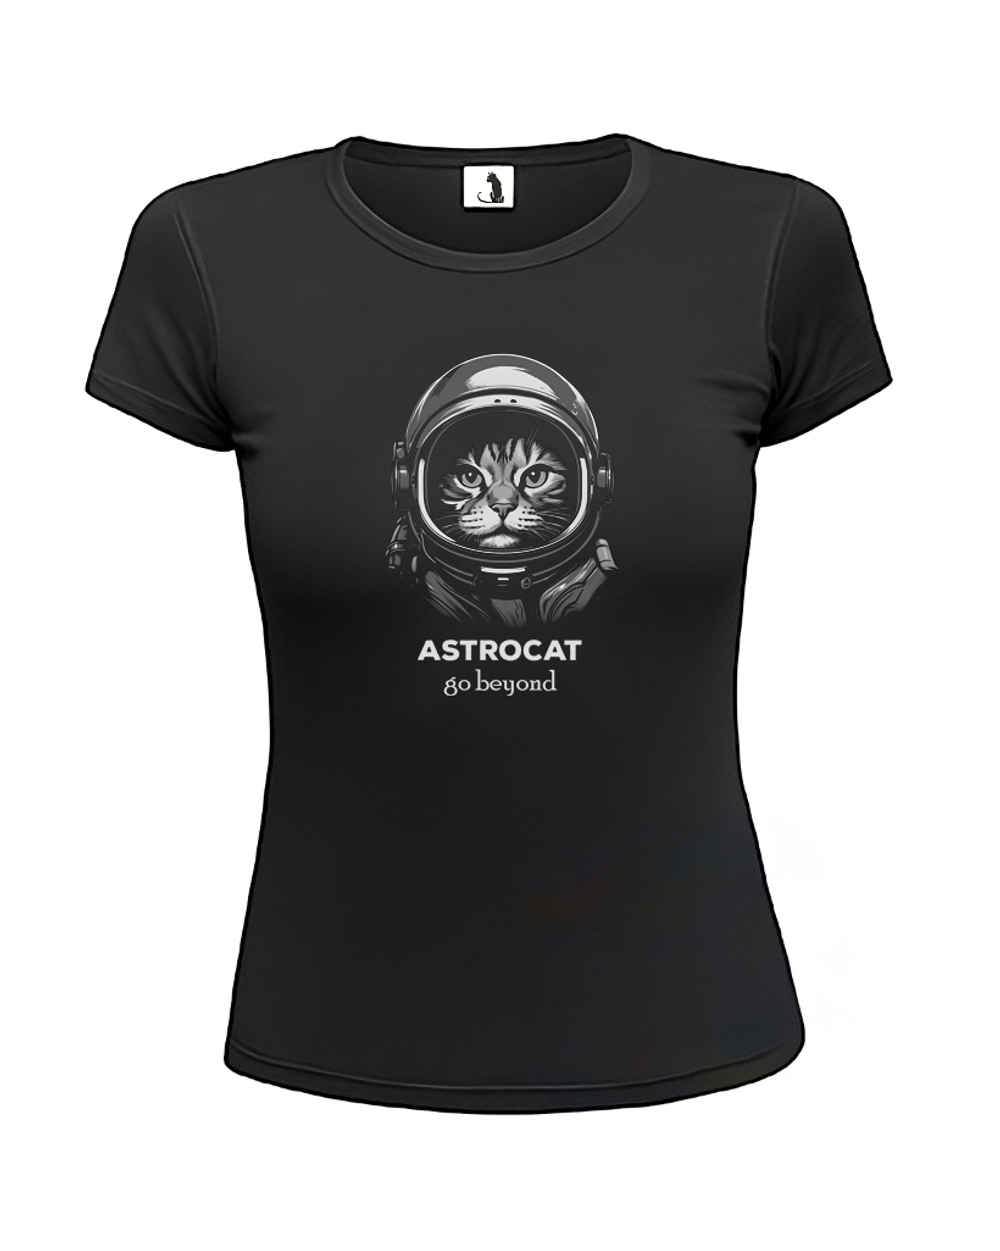 Футболка Astrocat Go beyond женская приталенная черная с серым рисунком